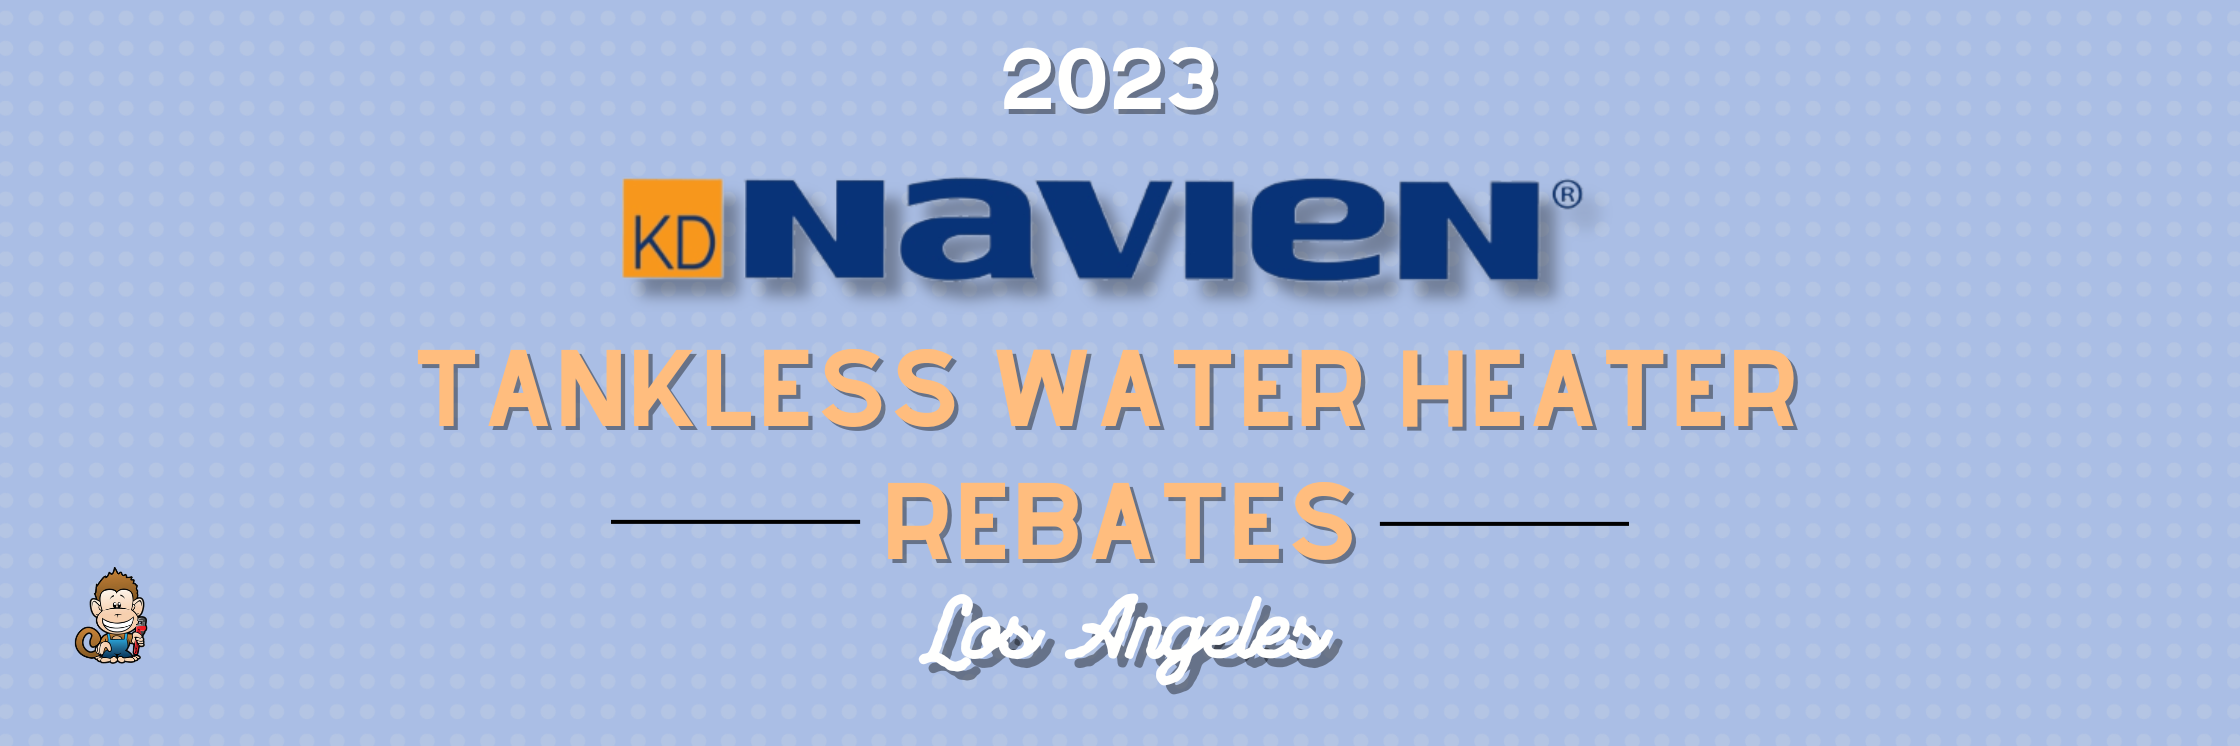 Dte Water Heater Rebate 2023